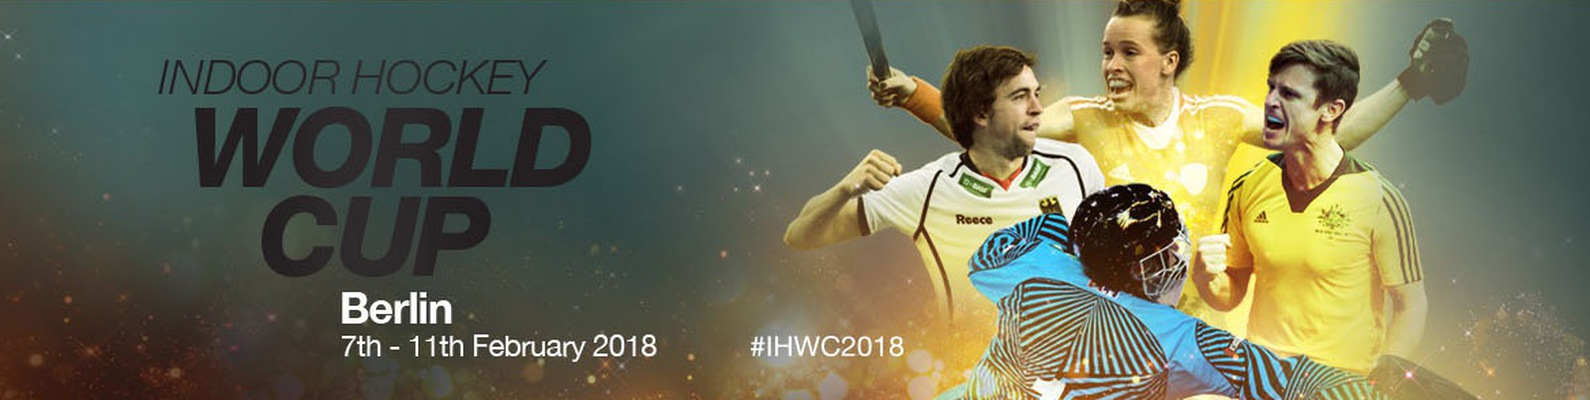 Картинки по запросу 5-й чемпионат мира по индорхоккею 2018